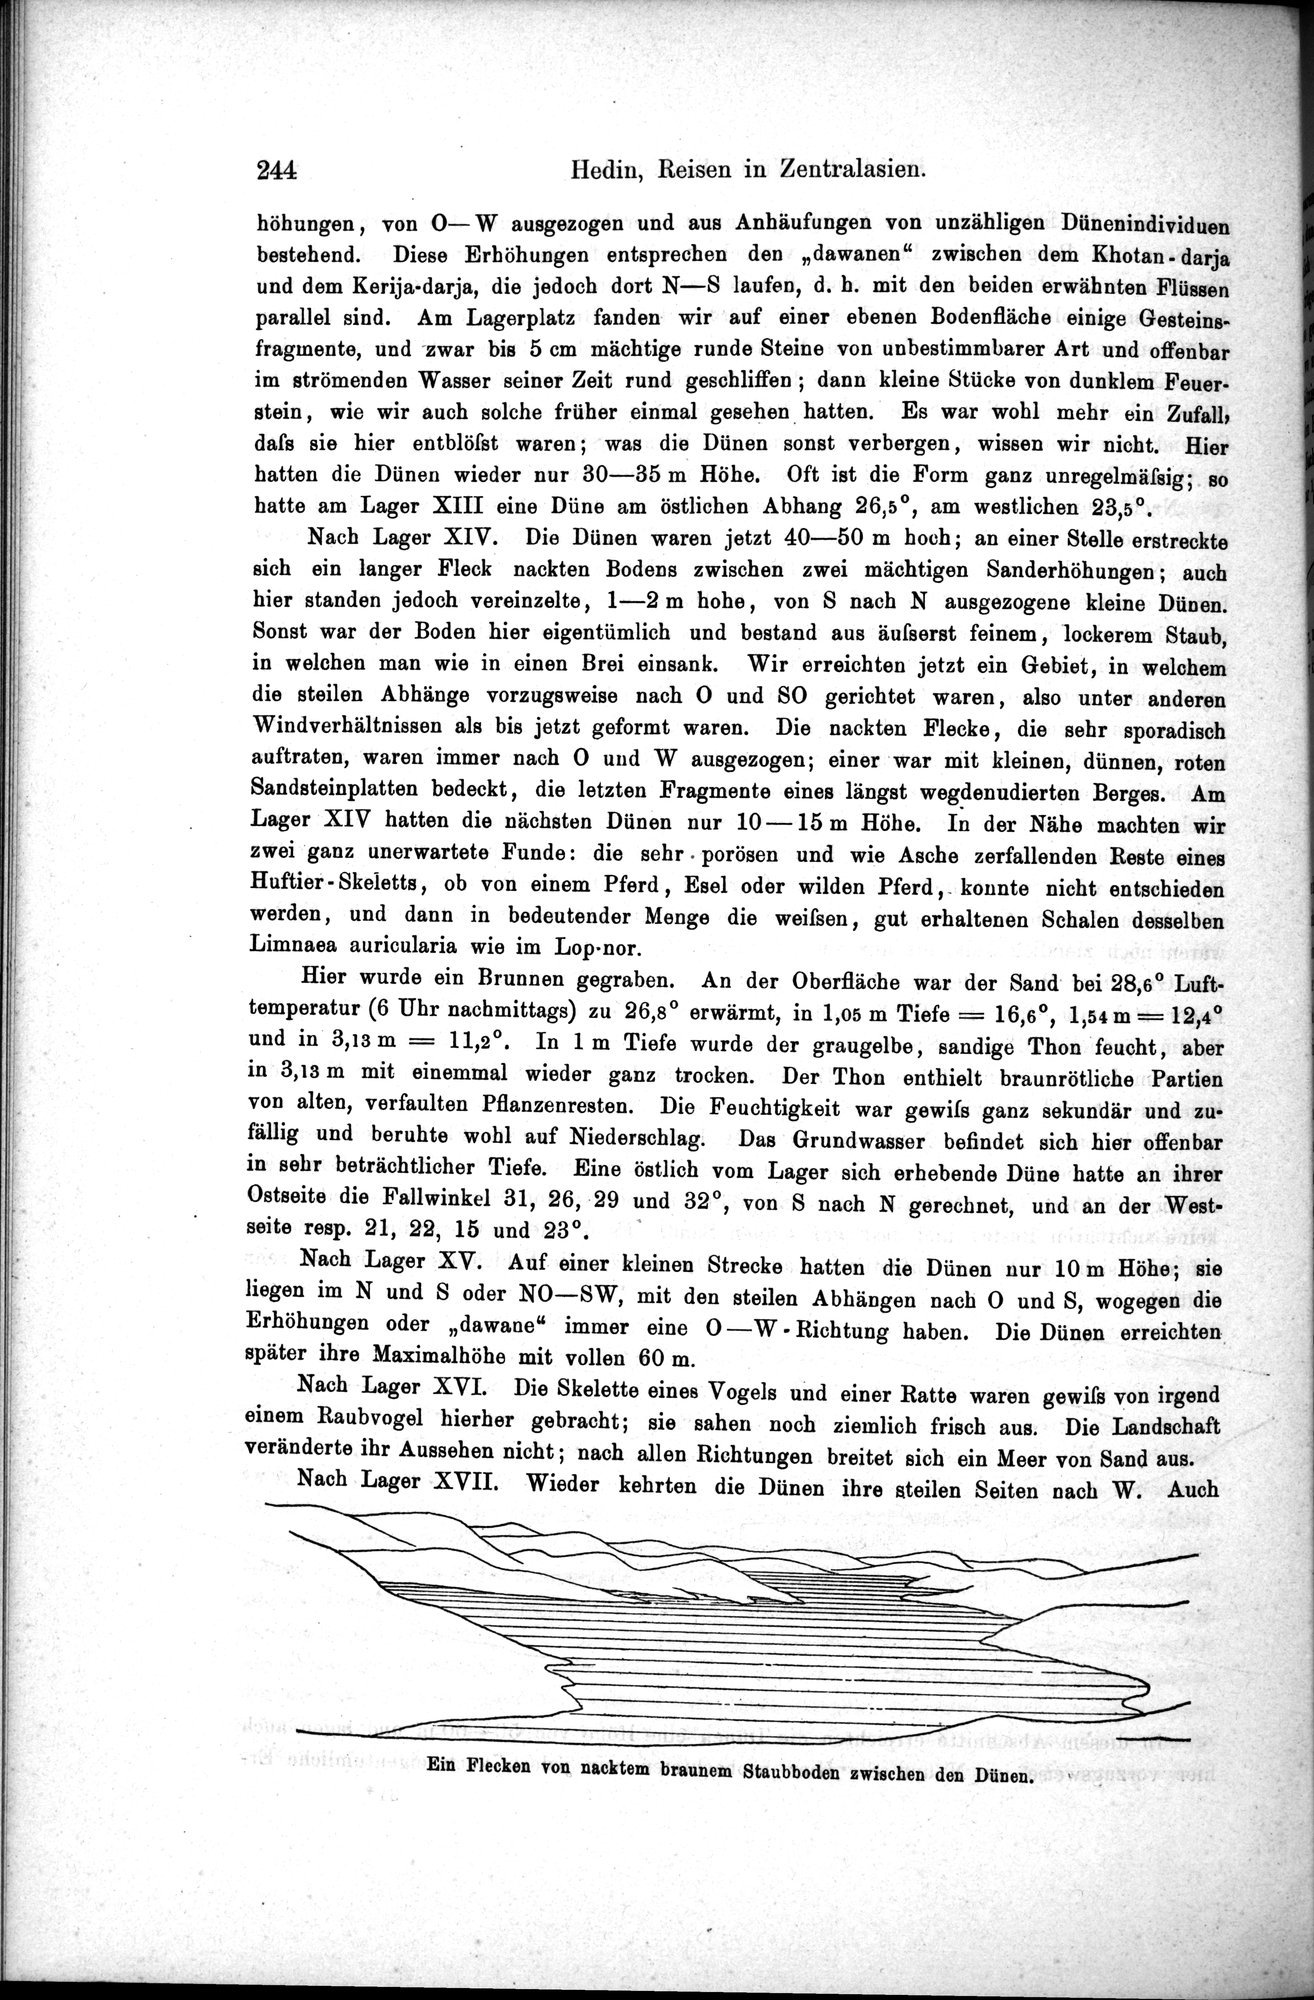 Die Geographische-Wissenschaftlichen Ergebnisse meiner Reisen in Zentralasien, 1894-1897 : vol.1 / Page 256 (Grayscale High Resolution Image)